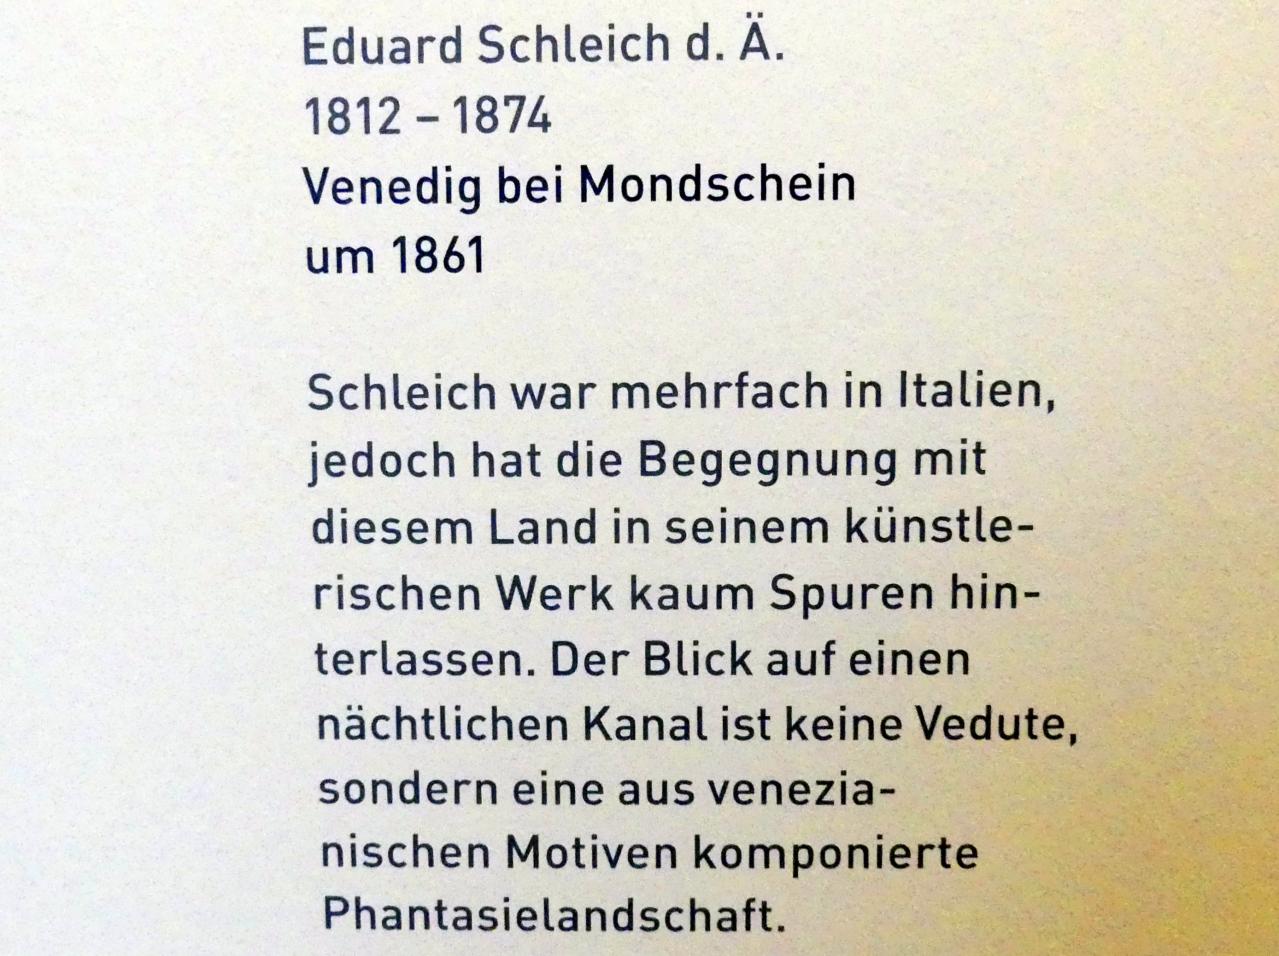 Eduard Schleich der Ältere (1855–1862), Venedig bei Mondschein, München, Sammlung Schack, Obergeschoss Vorhalle, um 1861, Bild 2/2